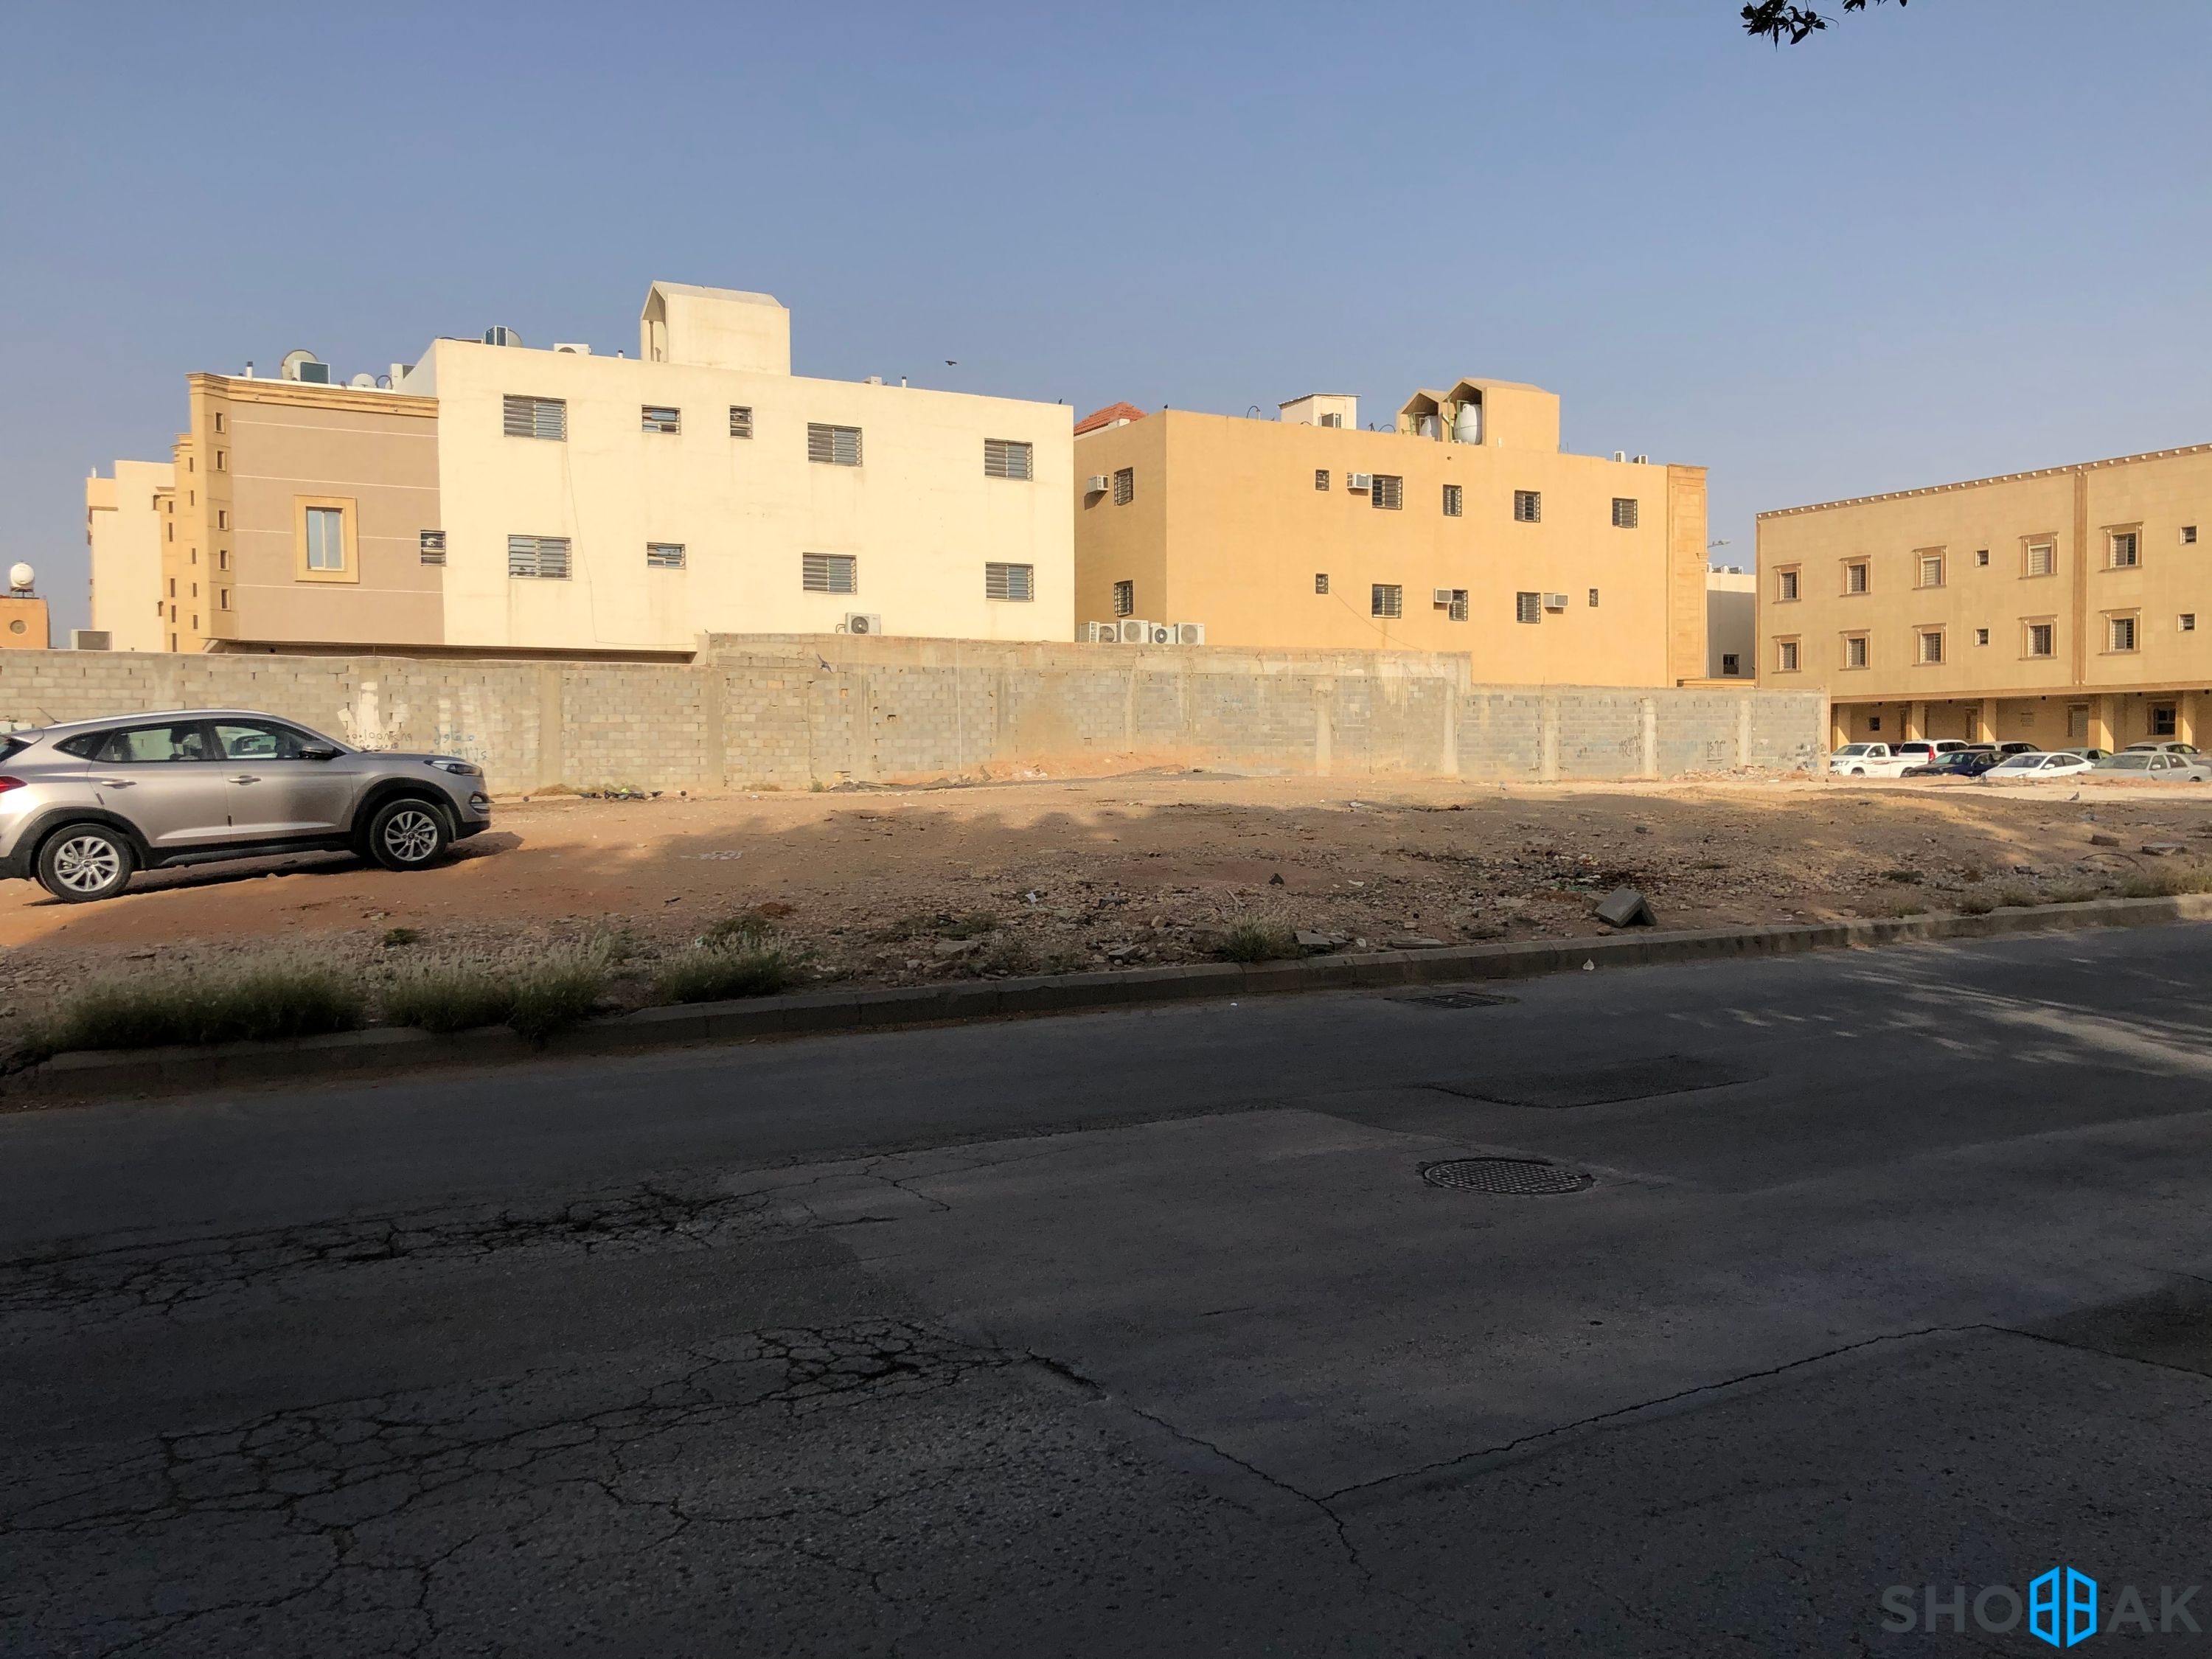 الرياض - الفيحاء - شارع الامام الشافعي  شباك السعودية